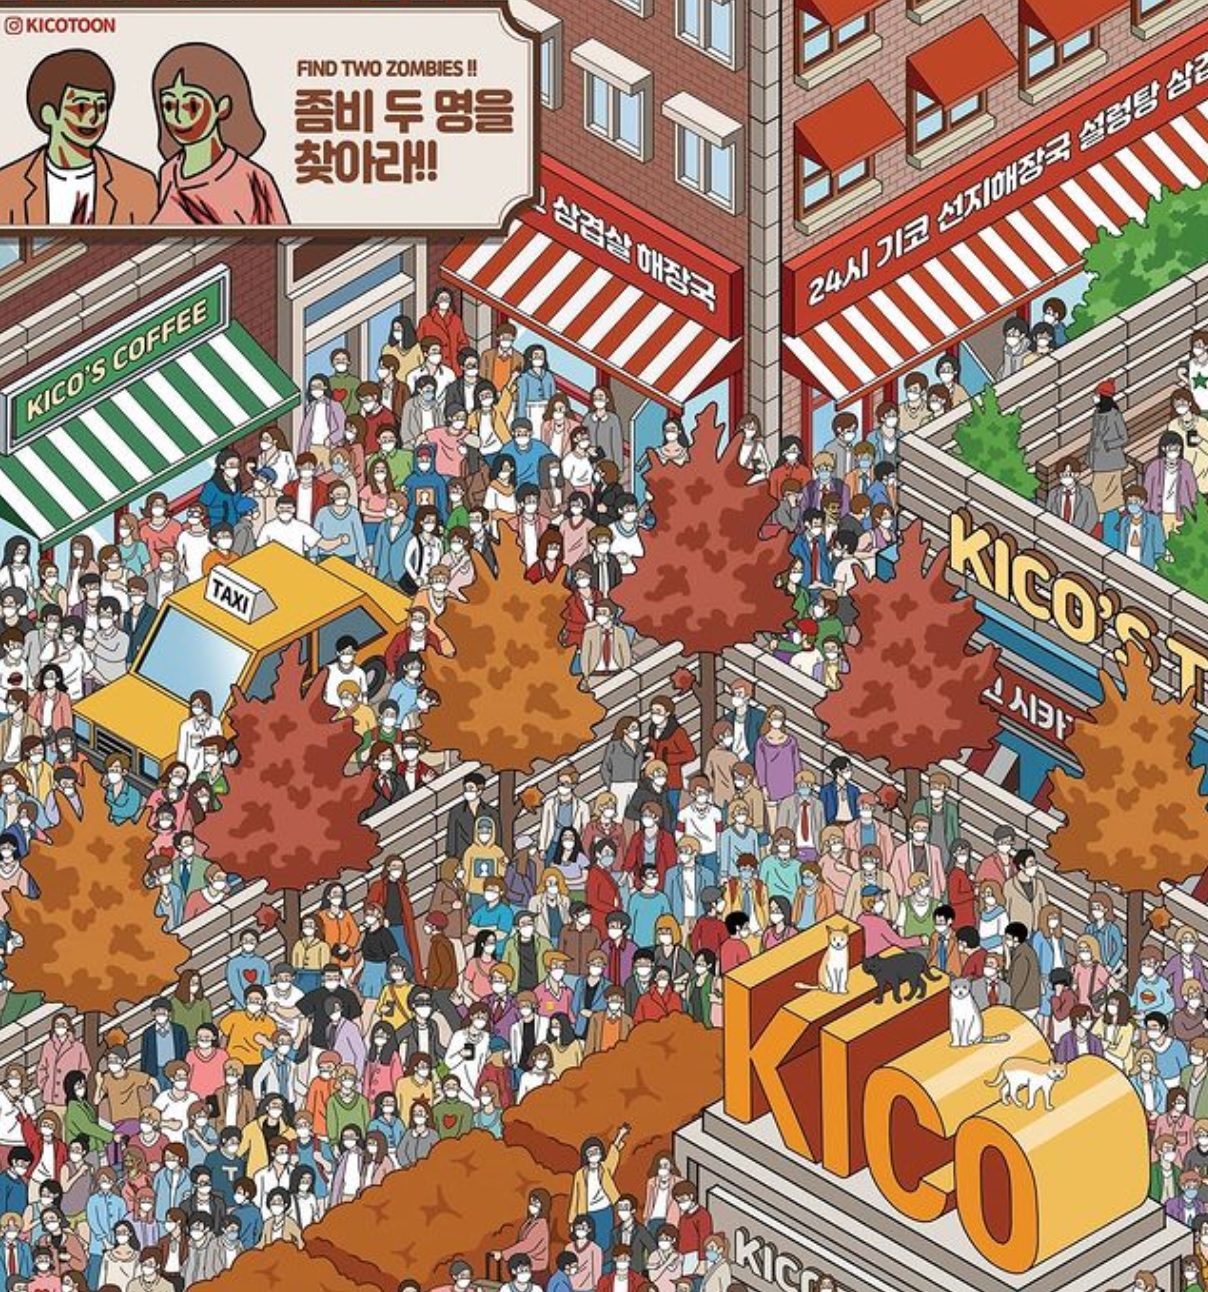 ¿Puedes encontrar a los dos zombies en medio del caos en este reto visual?